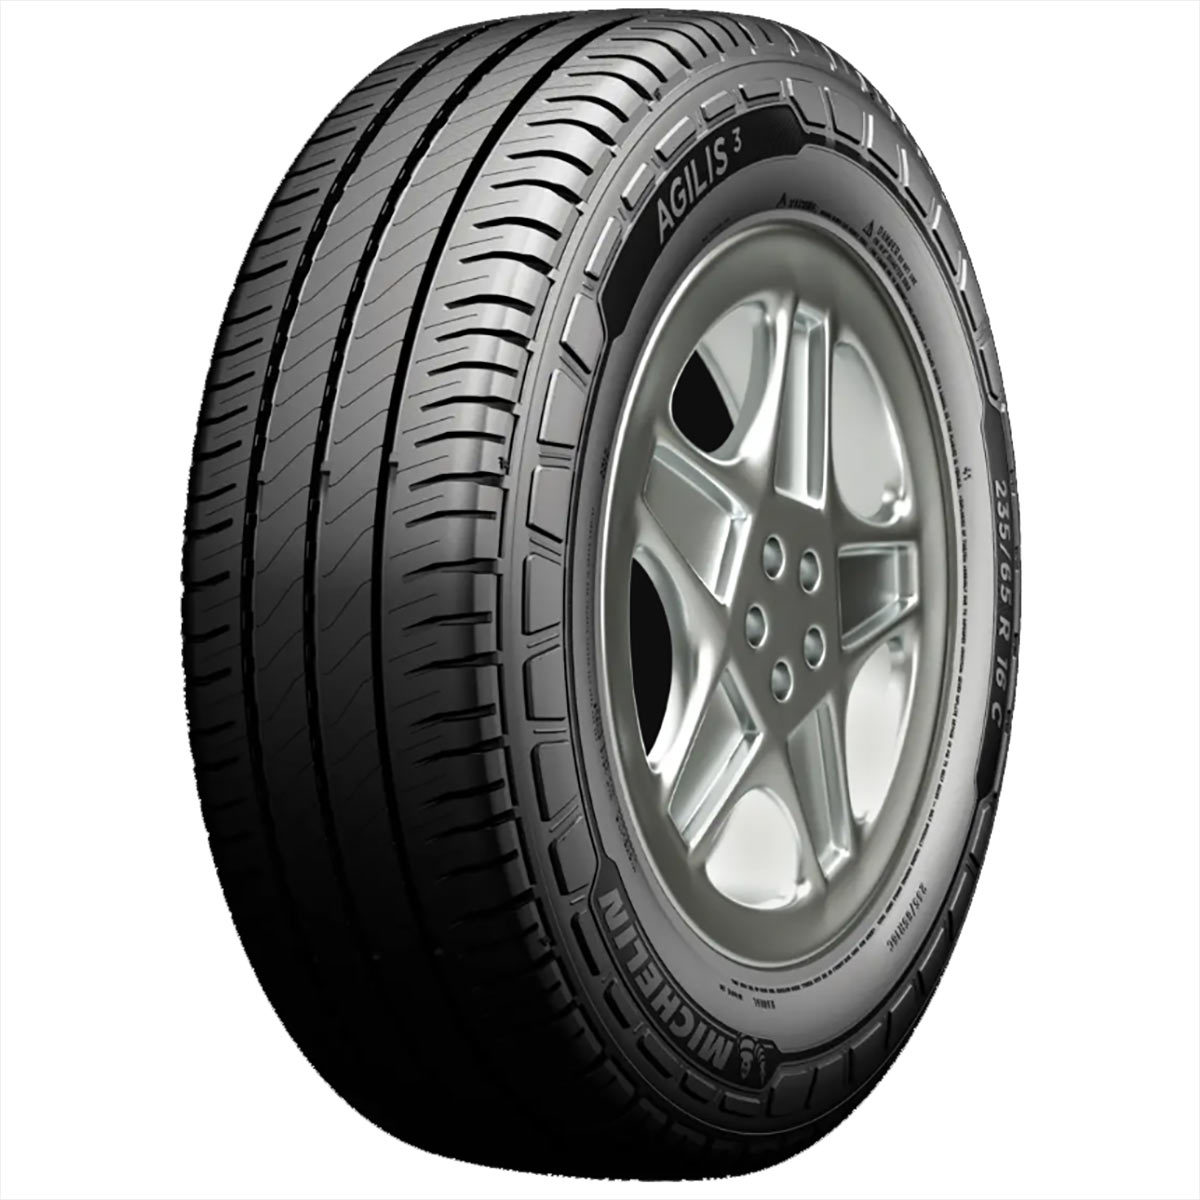 Michelin 225/65 R16 112 (R) AGILIS 3   DT